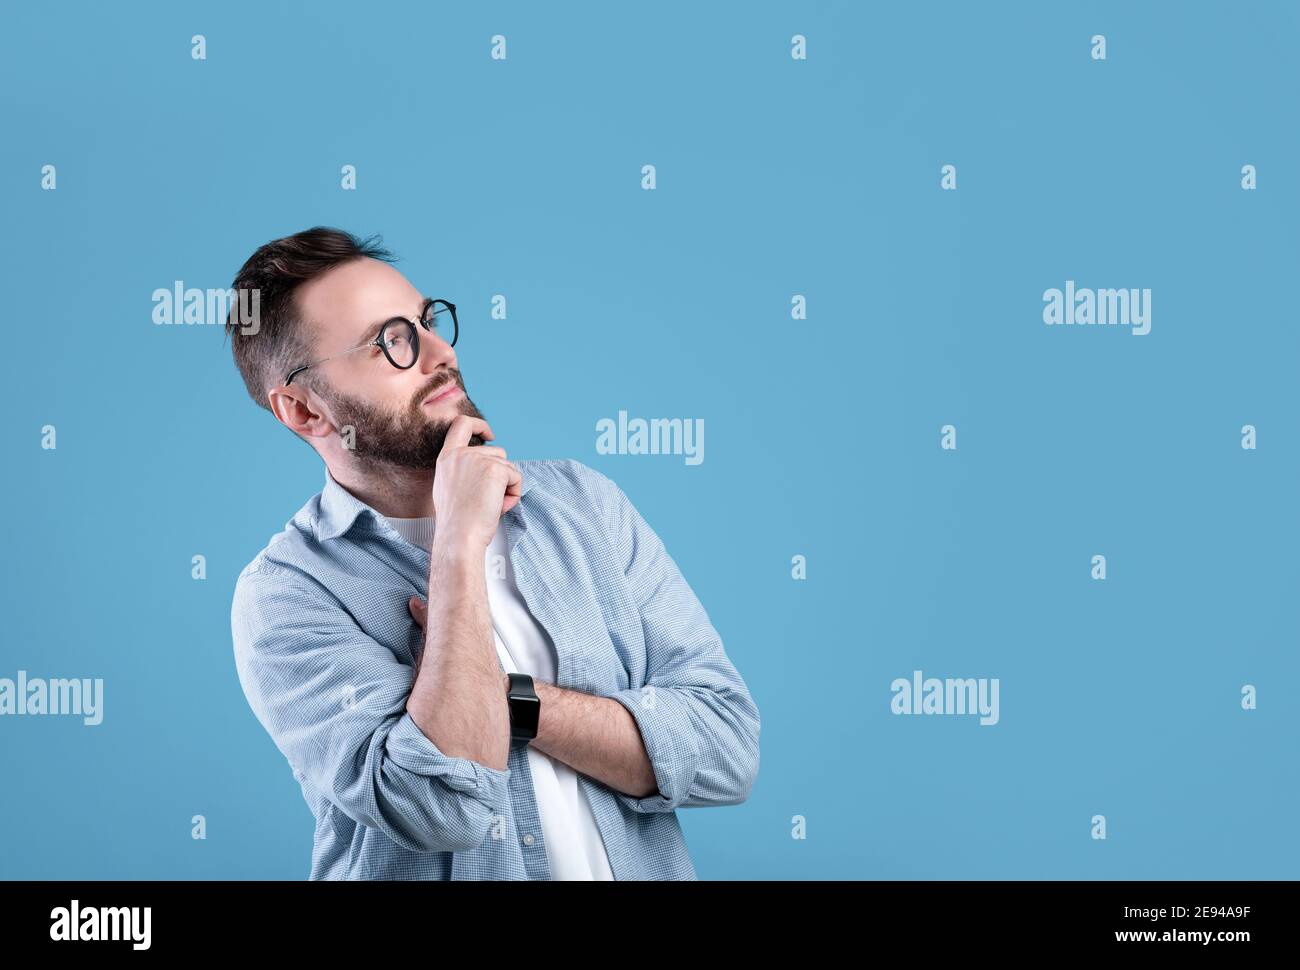 Nachdenklicher kaukasischer Kerl, der über Entscheidung oder Problem nachdenkt, mit Blick auf leeren Raum über blauem Studiohintergrund Stockfoto